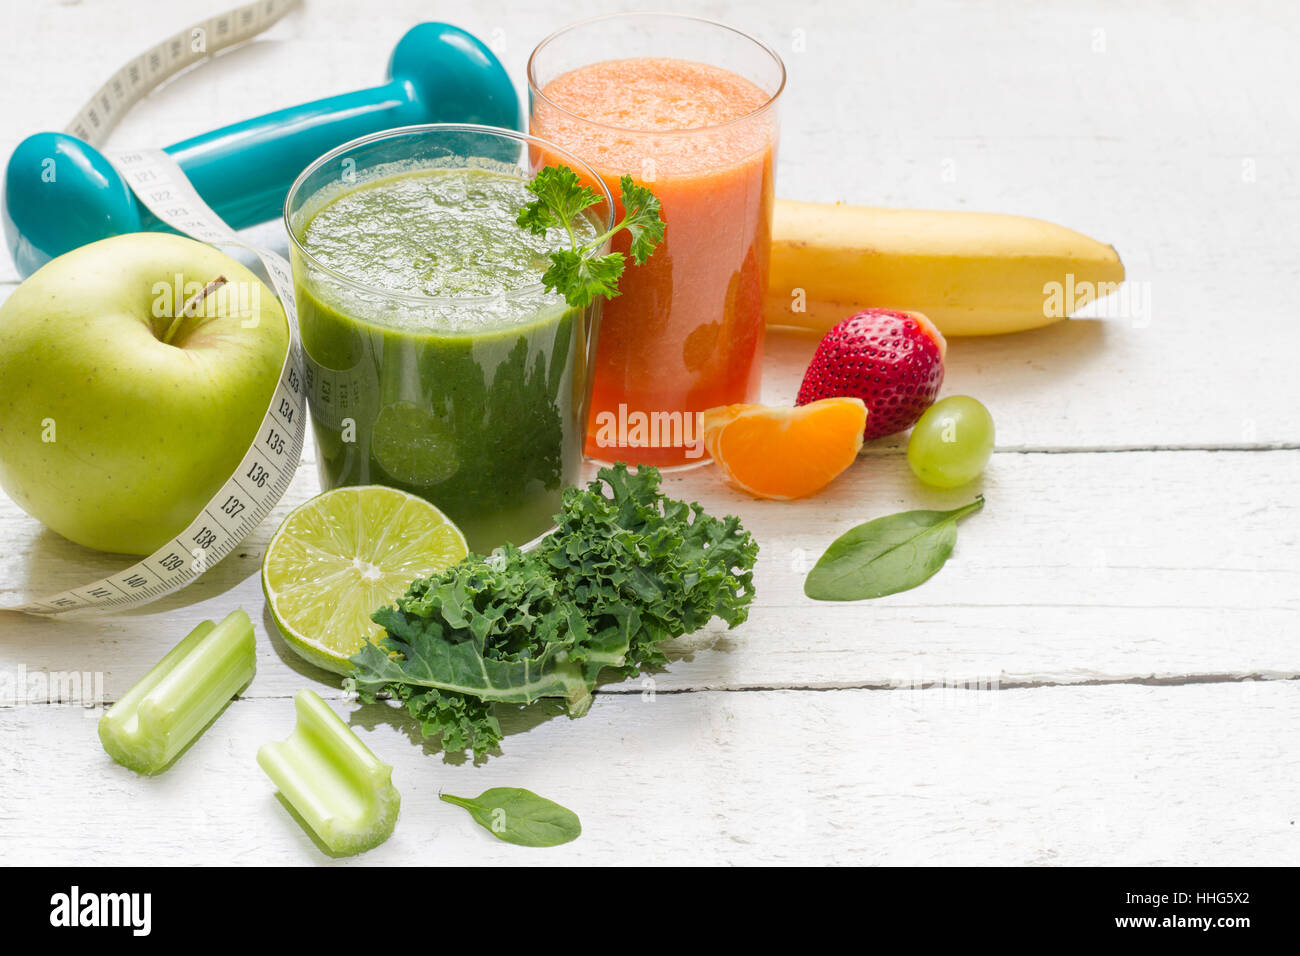 Obst, Gemüse, Saft, Smoothie und Hantel Gesundheit Ernährung und Fitness Lifestyle-Konzept Stockfoto